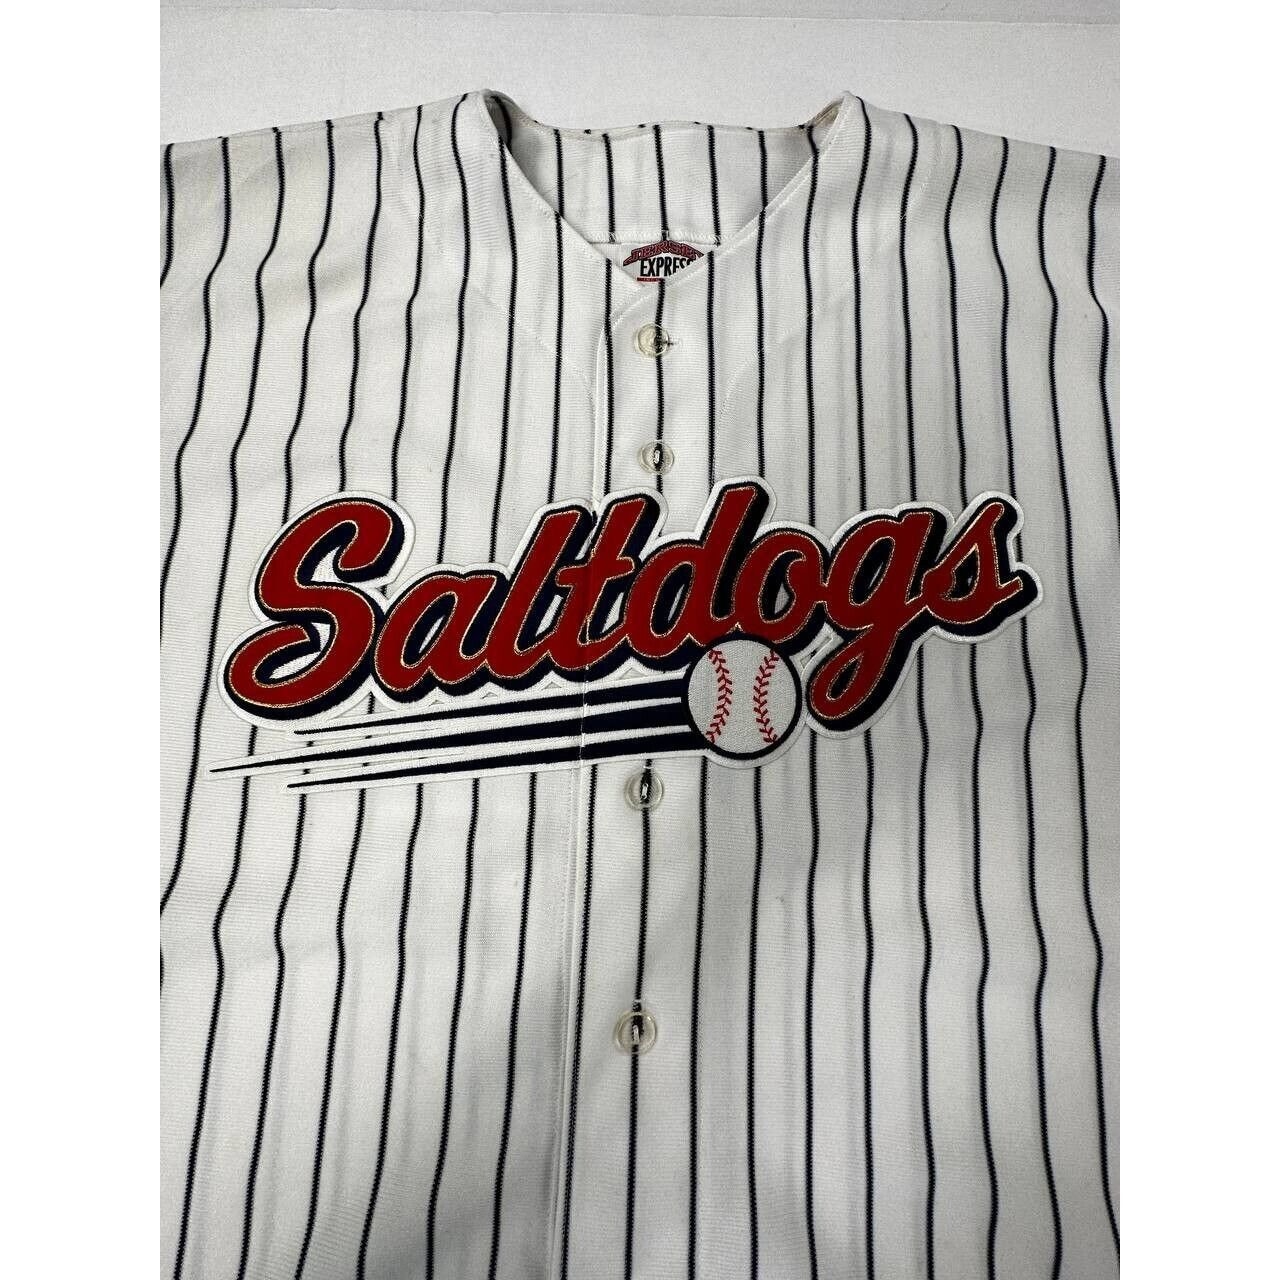 Vintage Lincoln Saltdogs Jersey Express Baseball Jersey Size